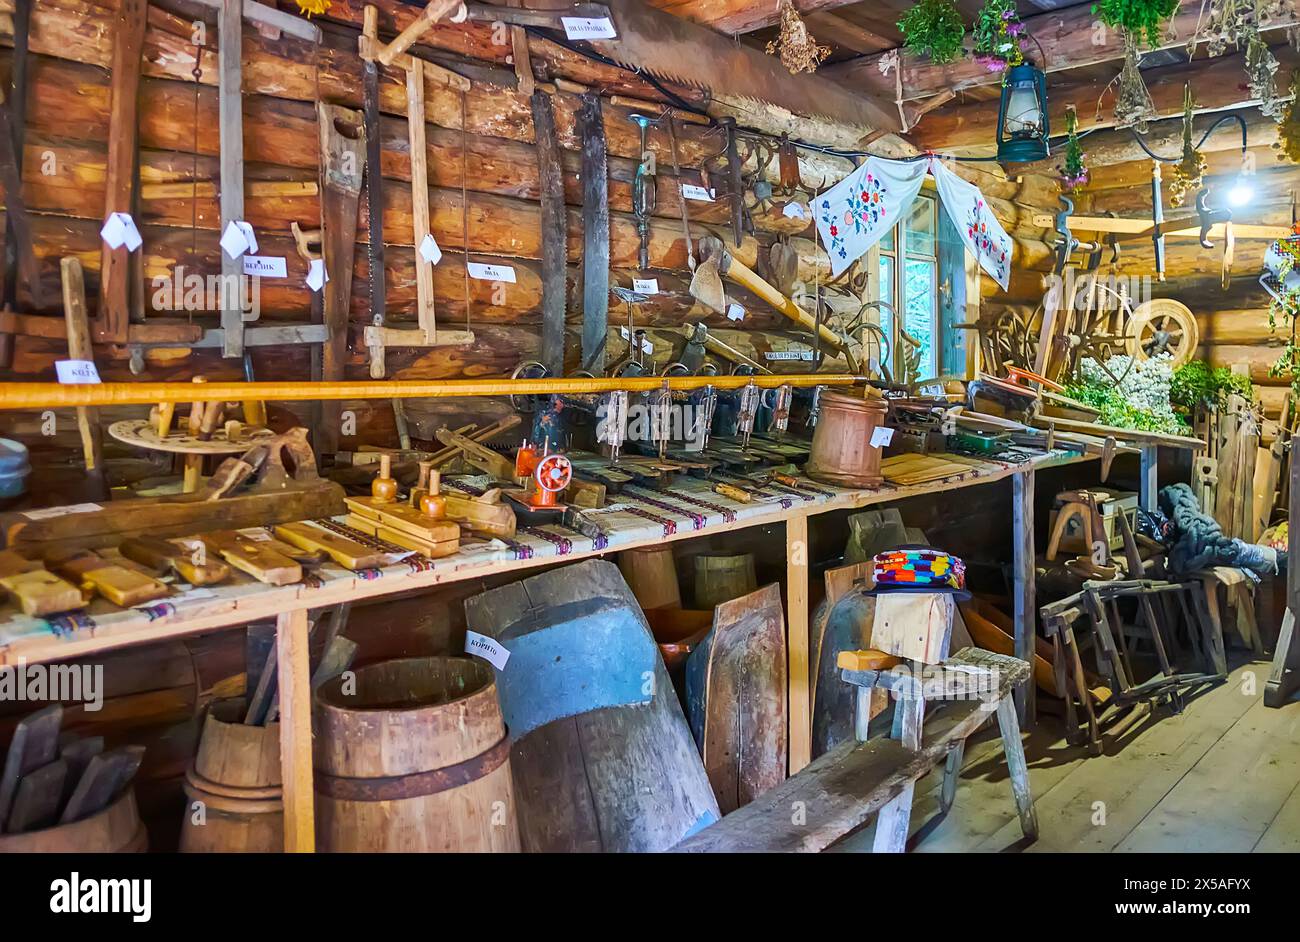 YABLUNYTSYA, UKRAINE - 24 JUILLET 2021 : intérieur de la maison de Hutsul molfar (sorcier folklorique) avec des meubles en bois, des herbes, des ustensiles de cuisine et des serviettes rushnyk Banque D'Images